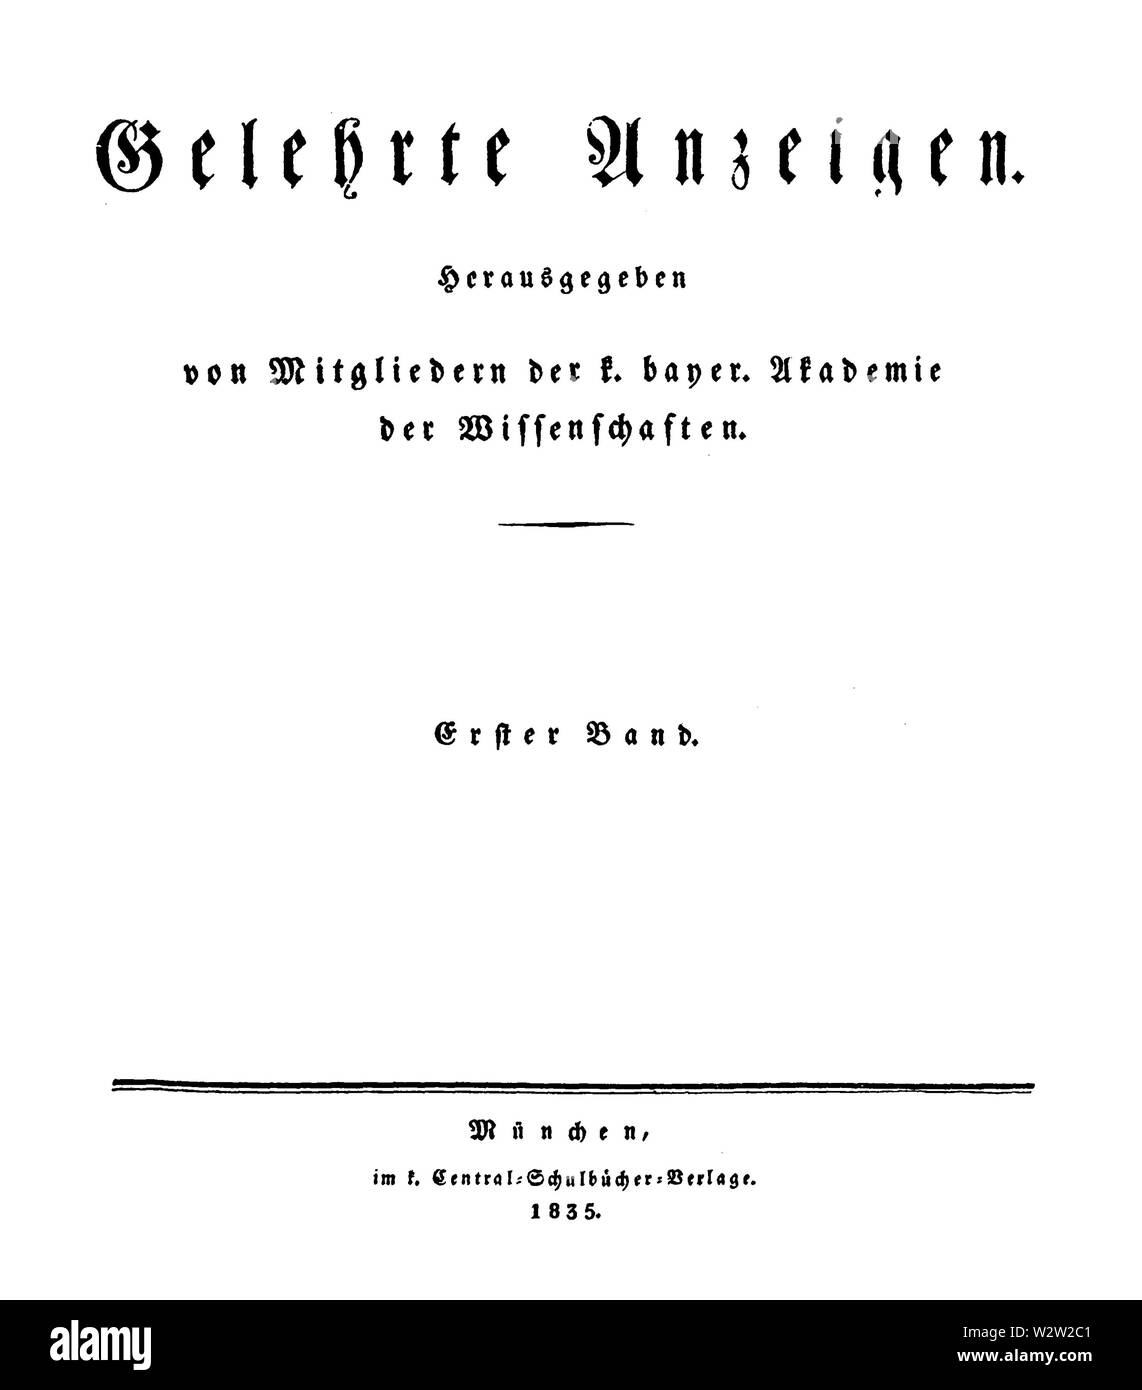 Gelehrte Anzeigen der Königlich Bayerische Akademie der Wissenschaften zu München 1835 Titel Foto Stock